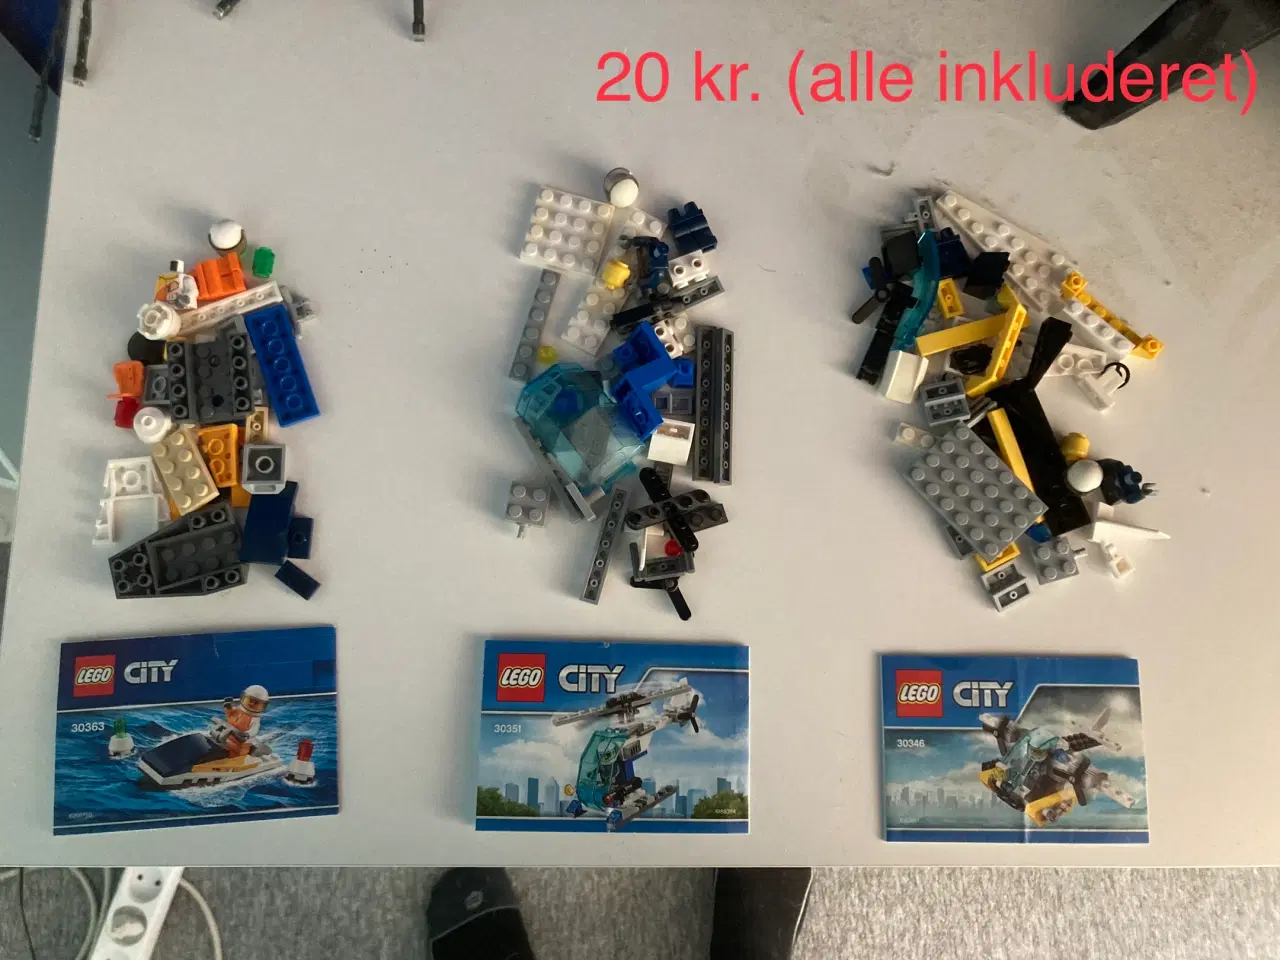 Billede 6 - Legosæt sælges (priserne er fra 5 kr. til 200 kr.)